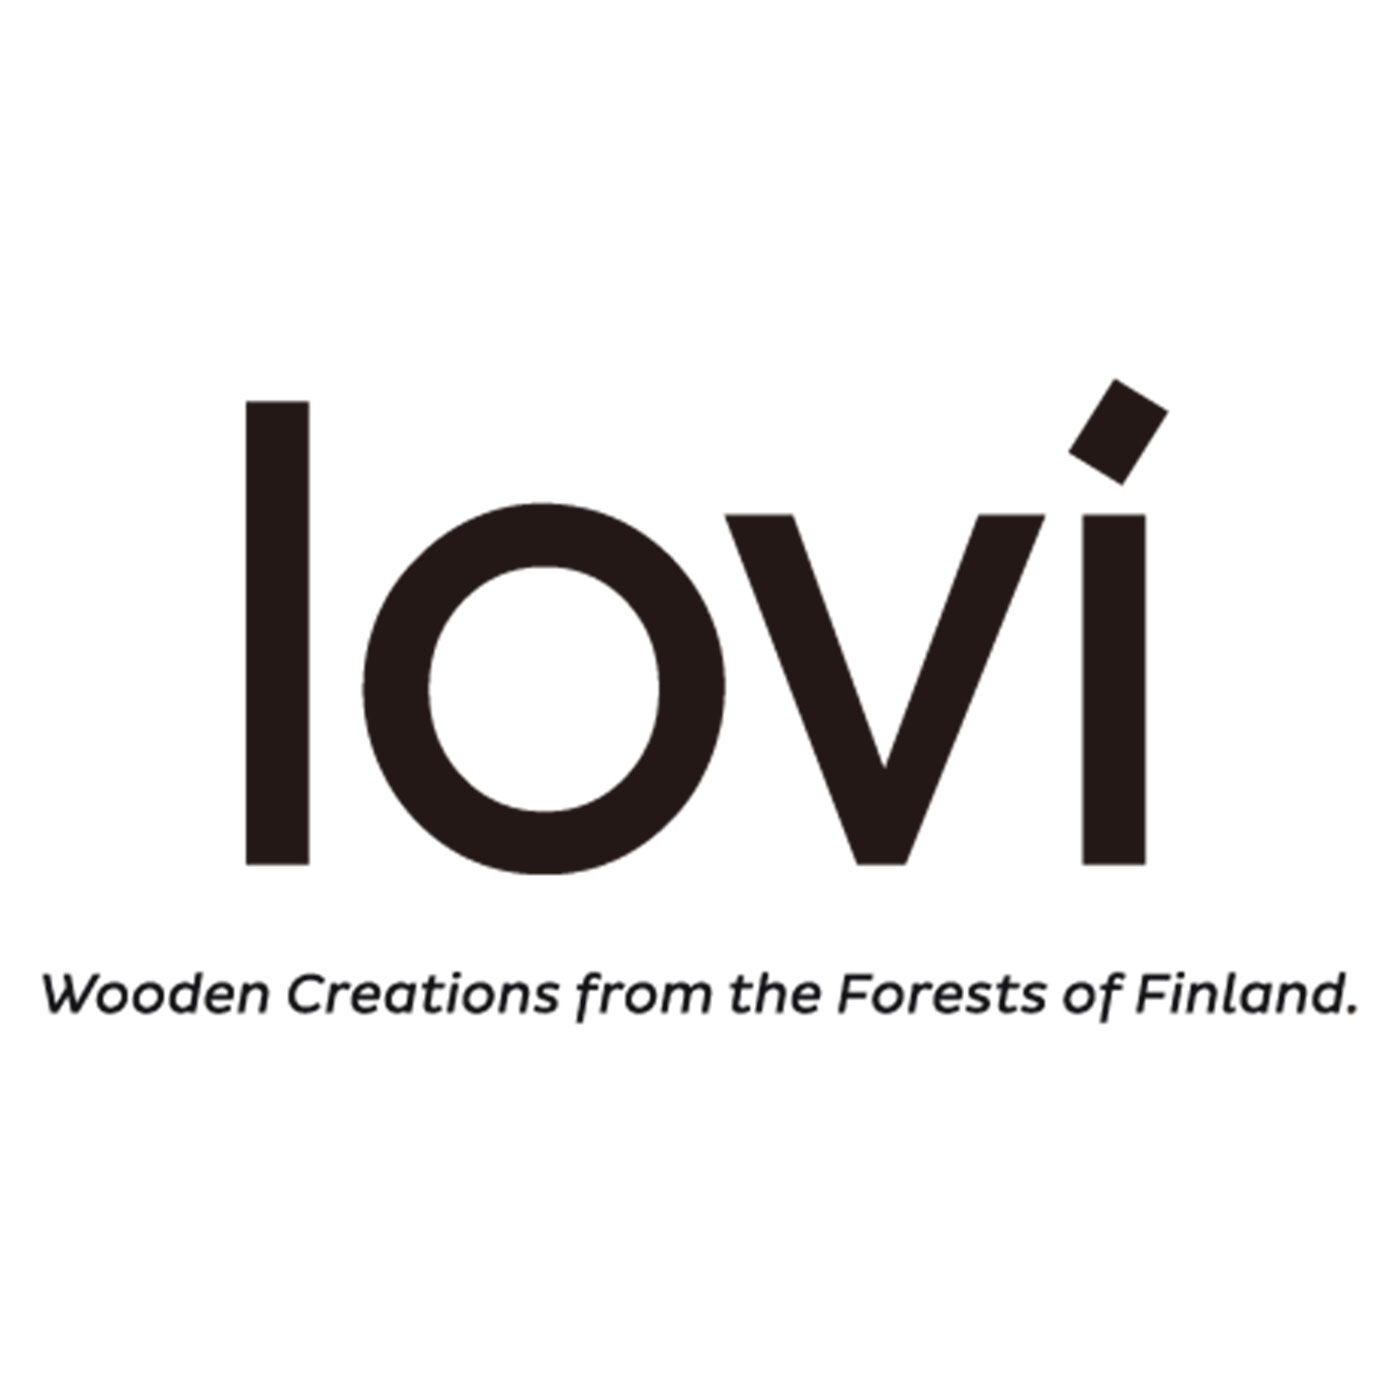 SeeMONO|インテリアにナチュラルなアクセントモミの木 ＜M＞ /Lovi（ロヴィ）|lovi（ロヴィ）は国土の80％が森と湖の大自然に囲まれた森の国フィンランドのブランドです。lovi社の製品はフィンランド産の白樺のプライウッドで作られています。そのため木を使うと同時に木を守る活動もしていて、フィンランド国内に限らず売り上げの一部を環境保全のための植栽活動に寄付しています。